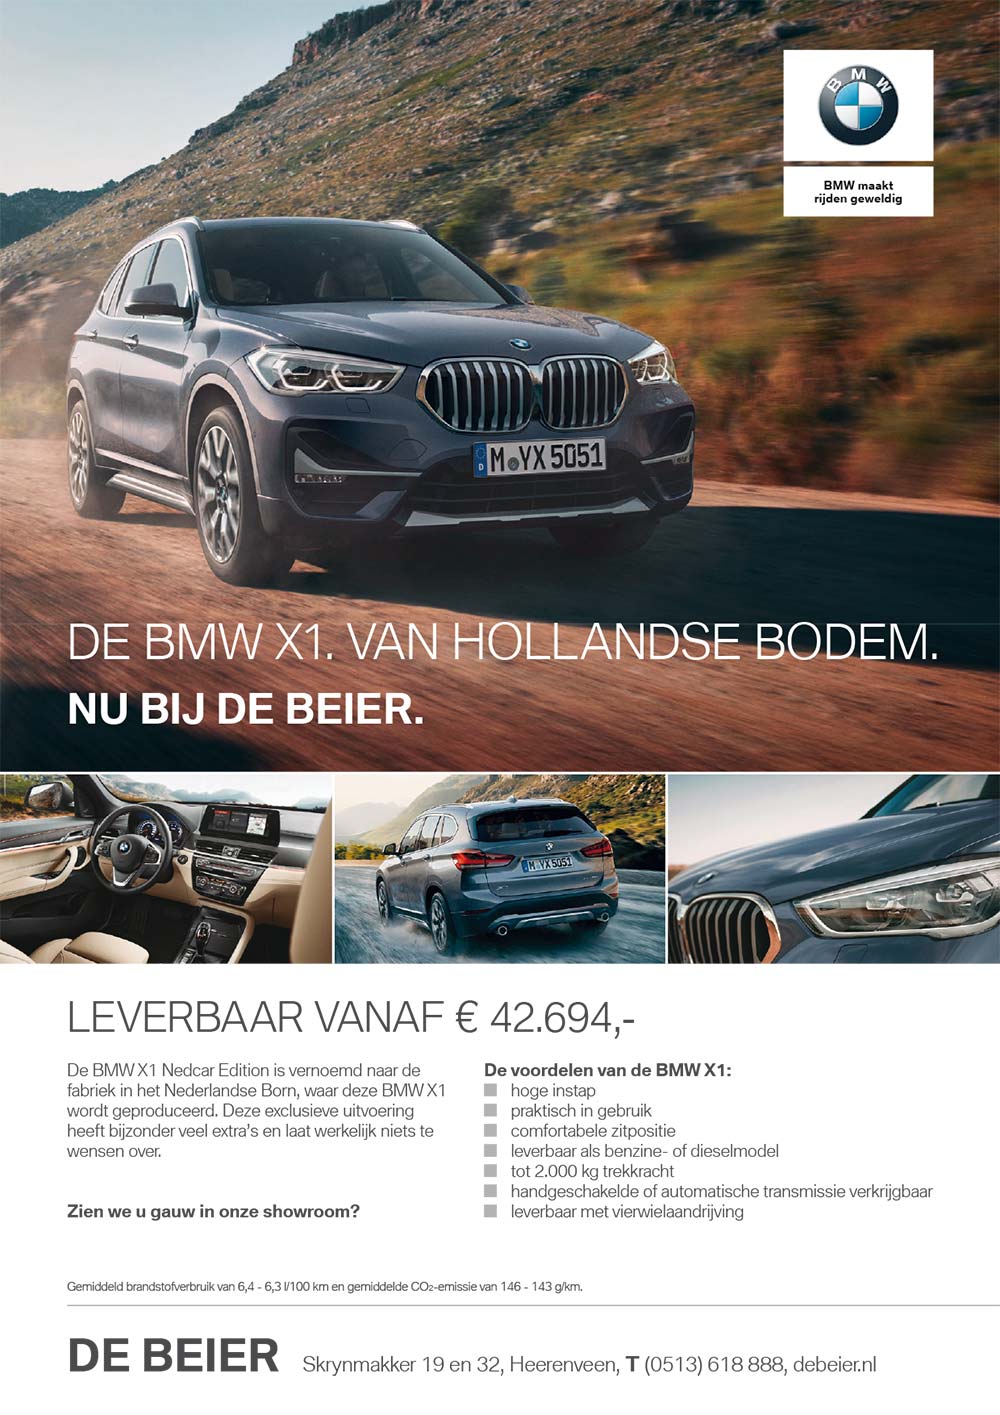 Advertentie BMW X1 door Esens Design